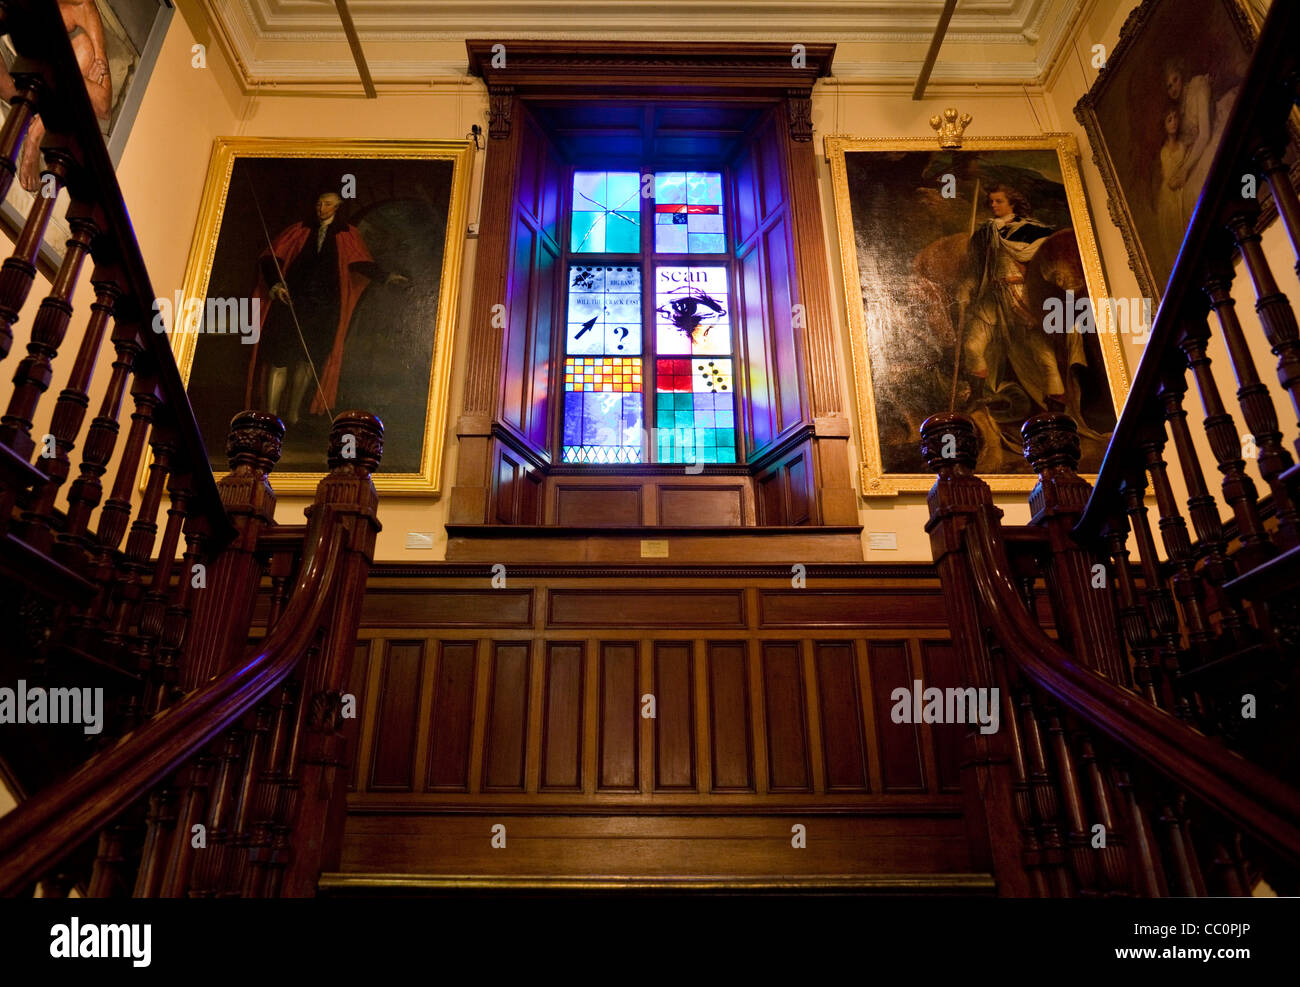 Escalier, vitraux, et des peintures de l'intérieur de la Crawford Art Gallery, la ville de Cork, Irlande Banque D'Images